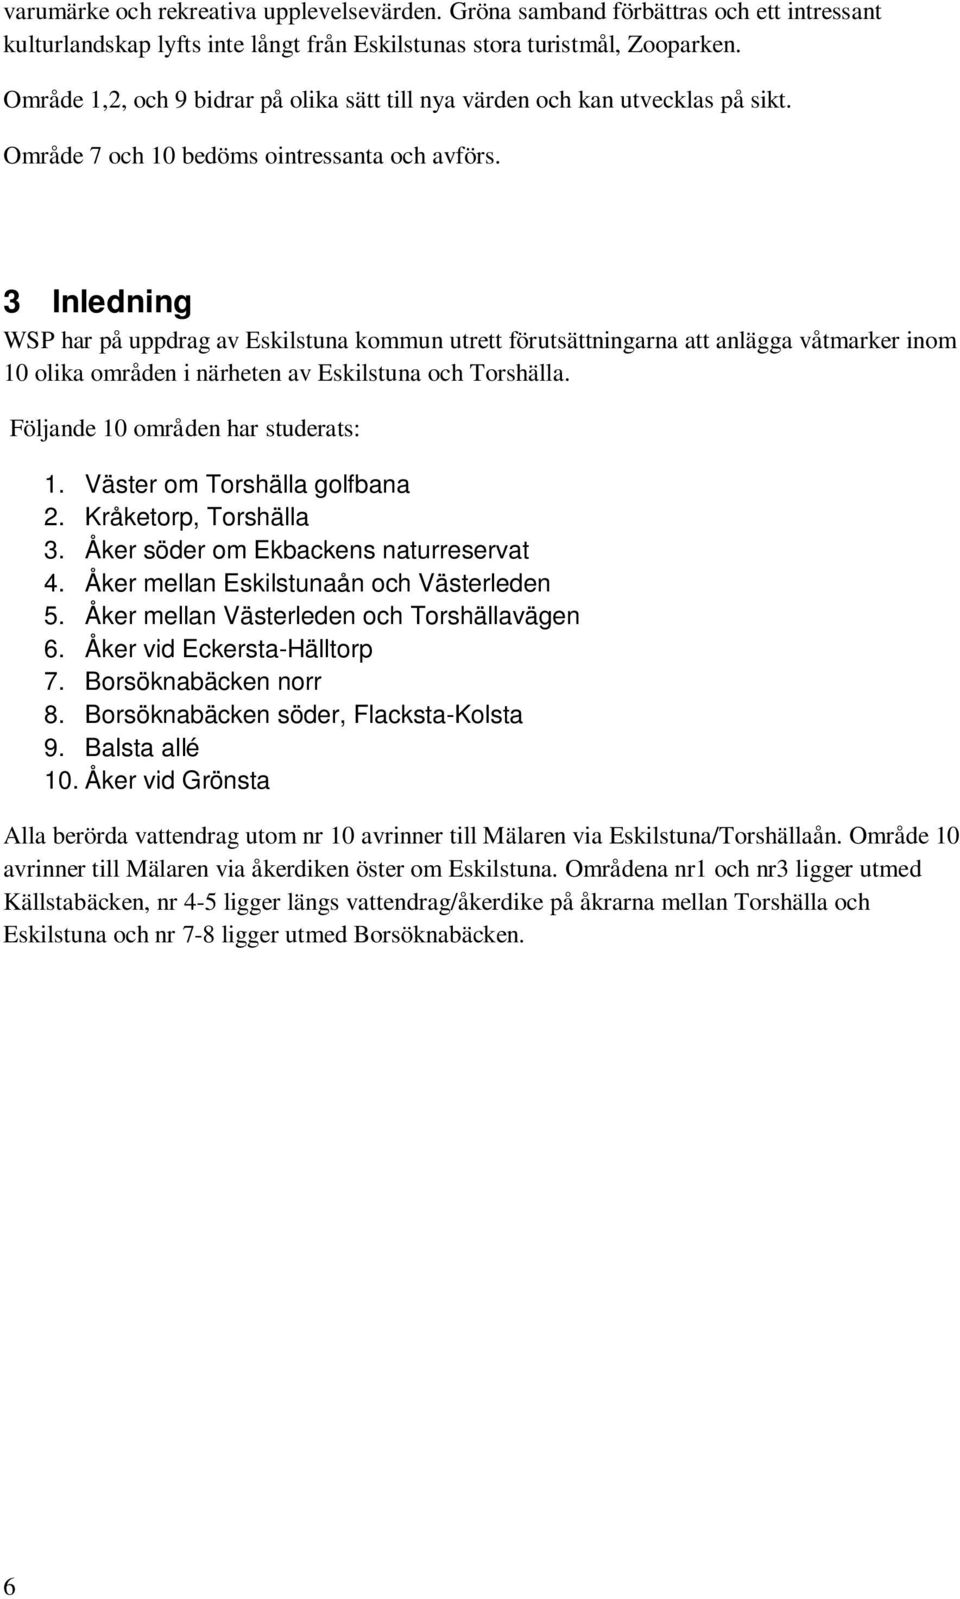 3 Inledning WSP har på uppdrag av Eskilstuna kommun utrett förutsättningarna att anlägga våtmarker inom 10 olika områden i närheten av Eskilstuna och Torshälla. Följande 10 områden har studerats: 1.